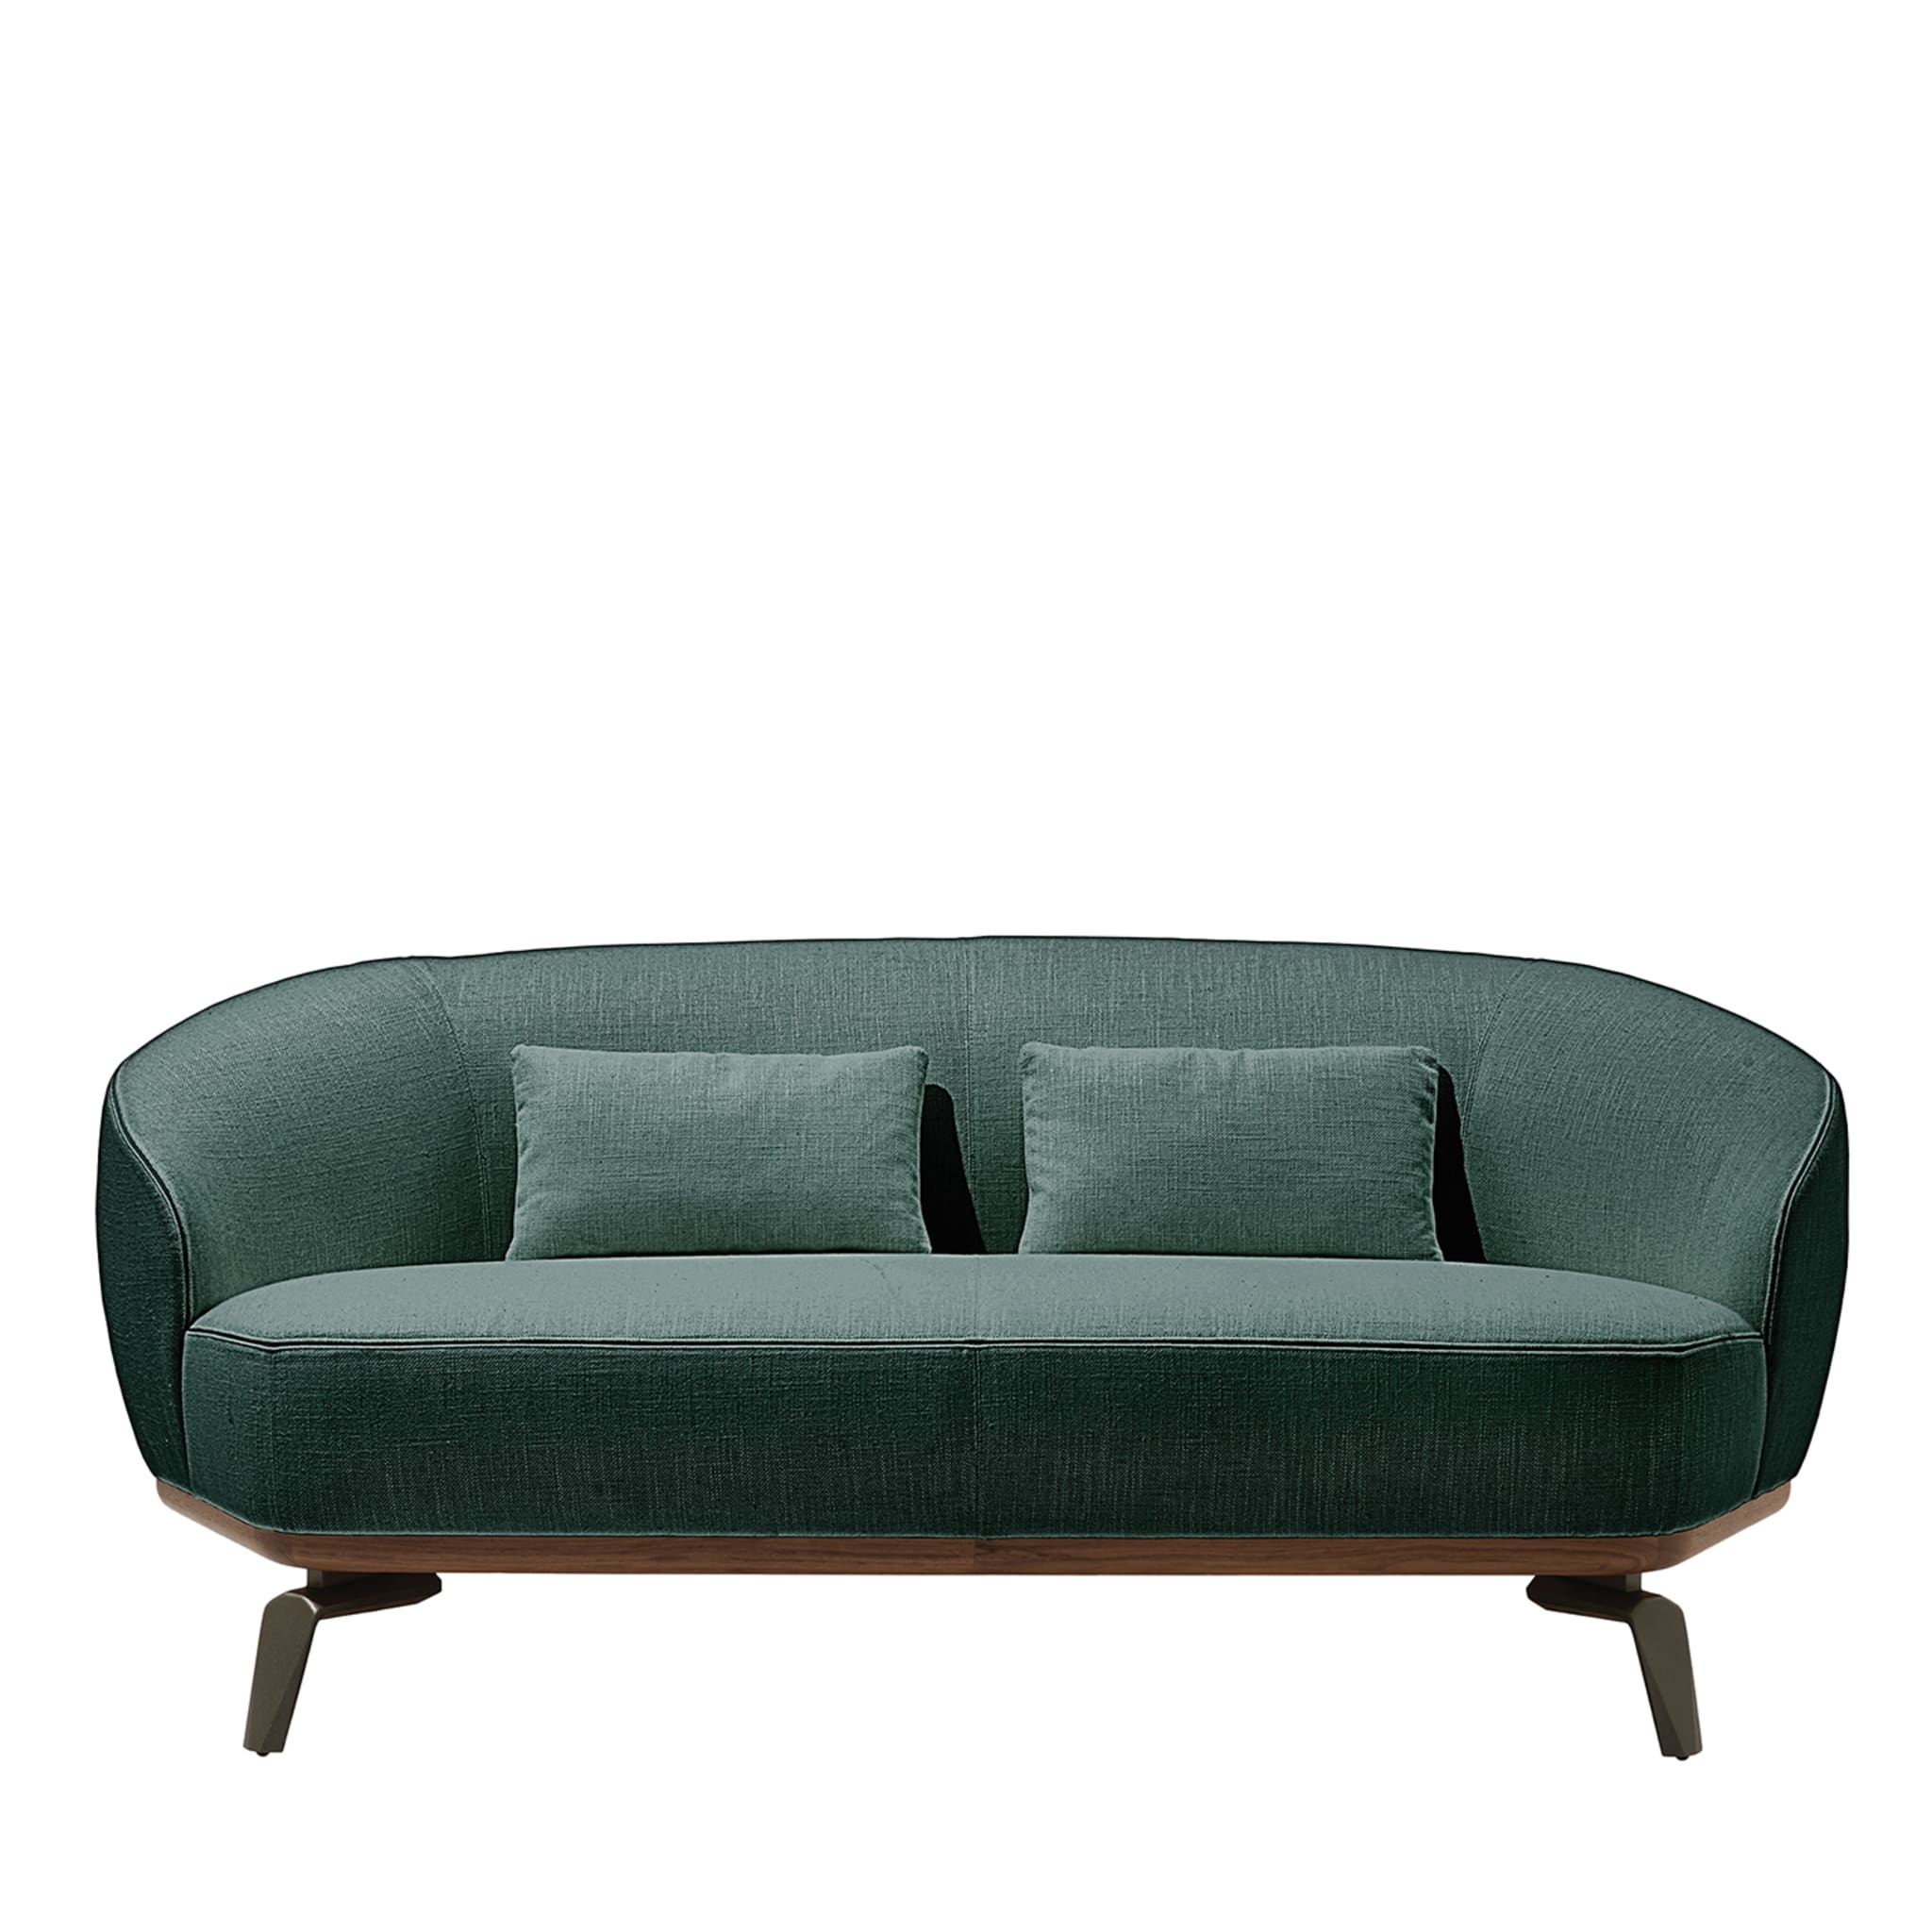 Tamino Green Sofa - Main view